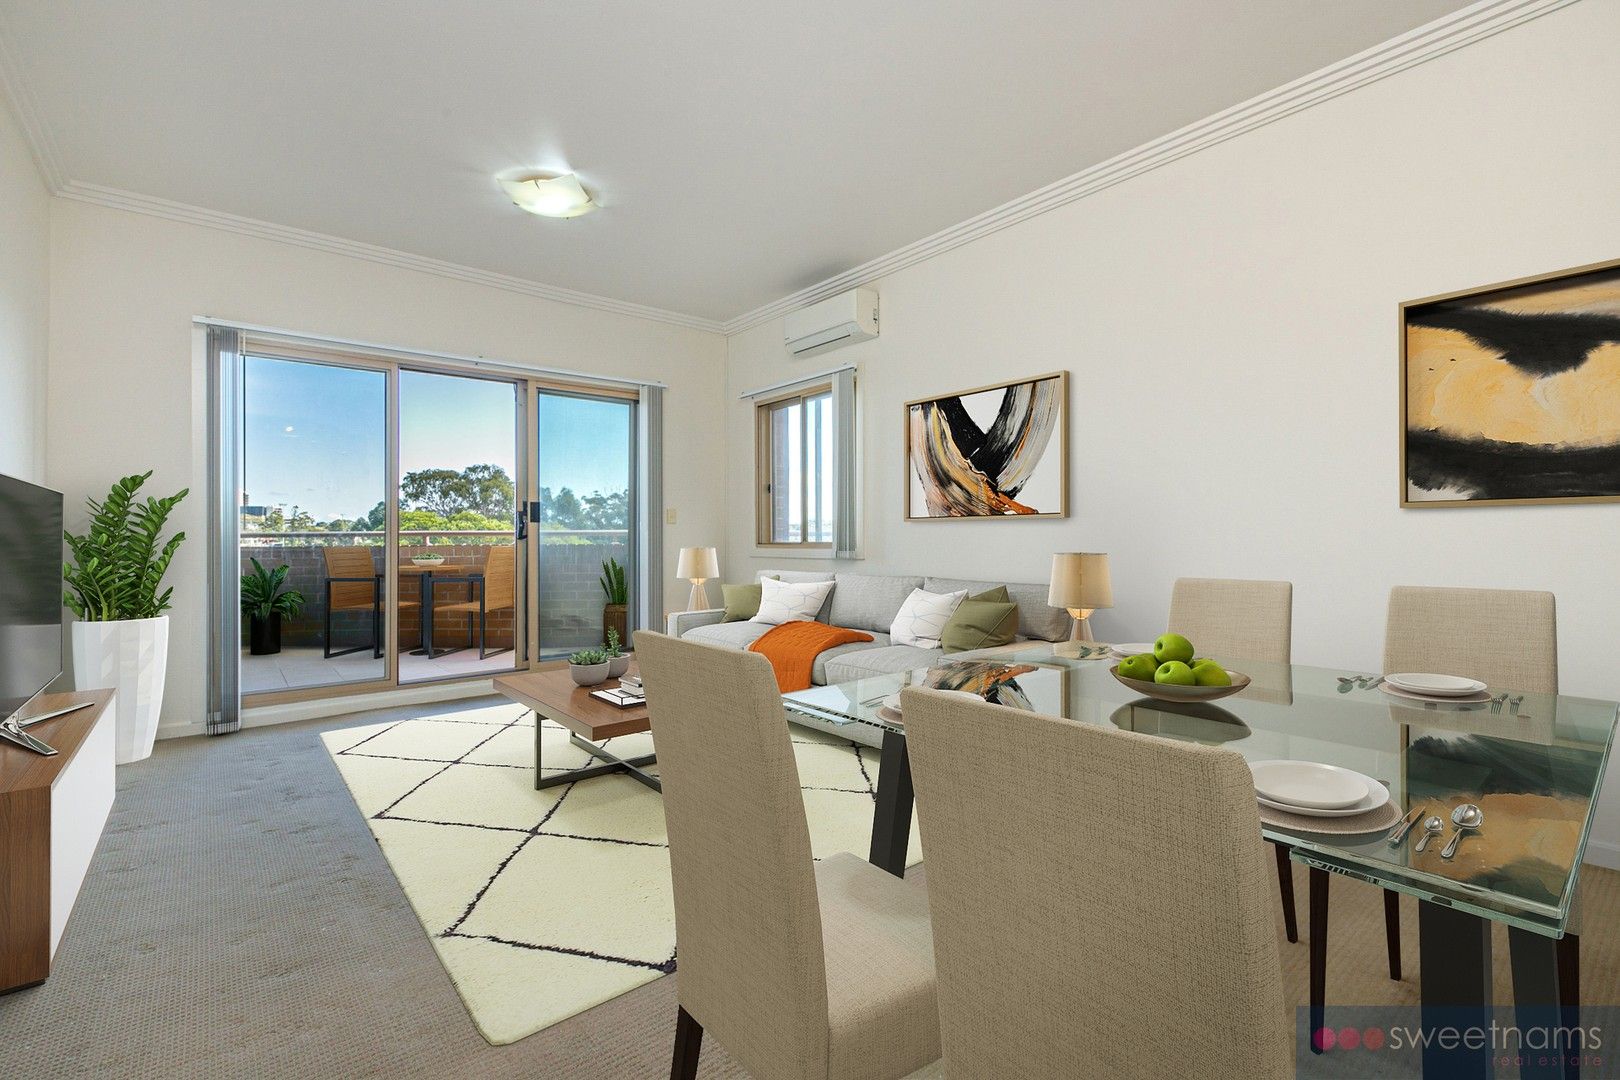 2 bedrooms Apartment / Unit / Flat in 7/197-199 Woodville Road MERRYLANDS NSW, 2160